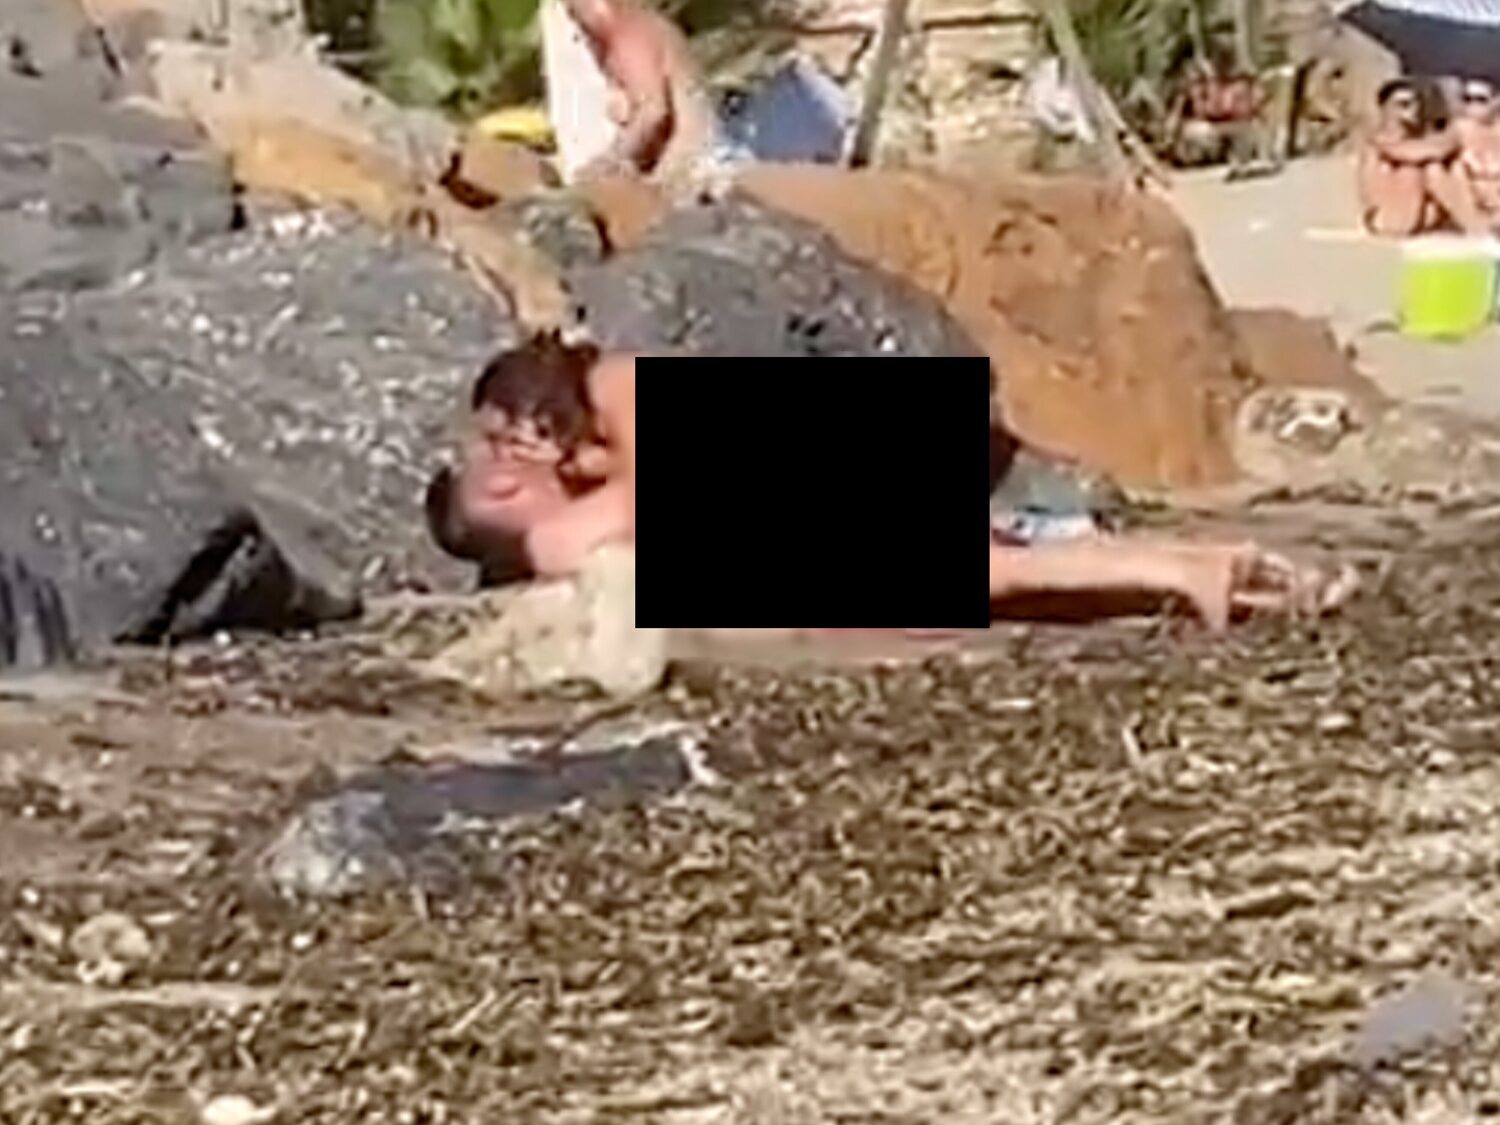 Una pareja tiene sexo en una playa de Cartagena a plena luz del día y rodeados de bañistas